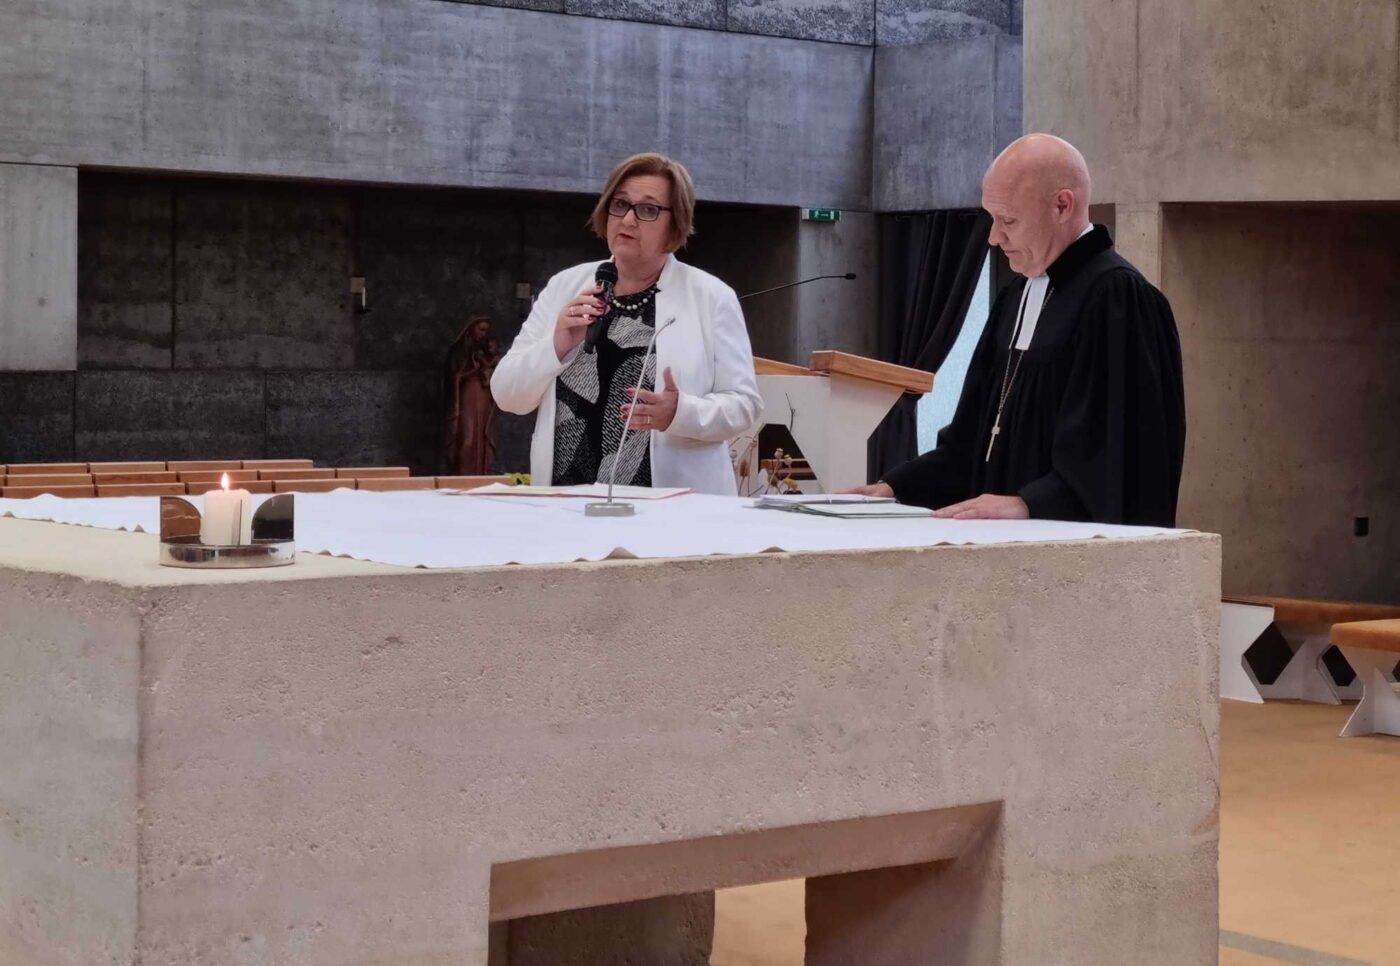 Superintendentialkuratorin Petra Mandl und Superintendent Matthias Geist zeigten in ihrer Dialogpredigt auf, wie in der Kirche gemeinsames Leiten gelingen kann. (Foto: epd/Dasek)